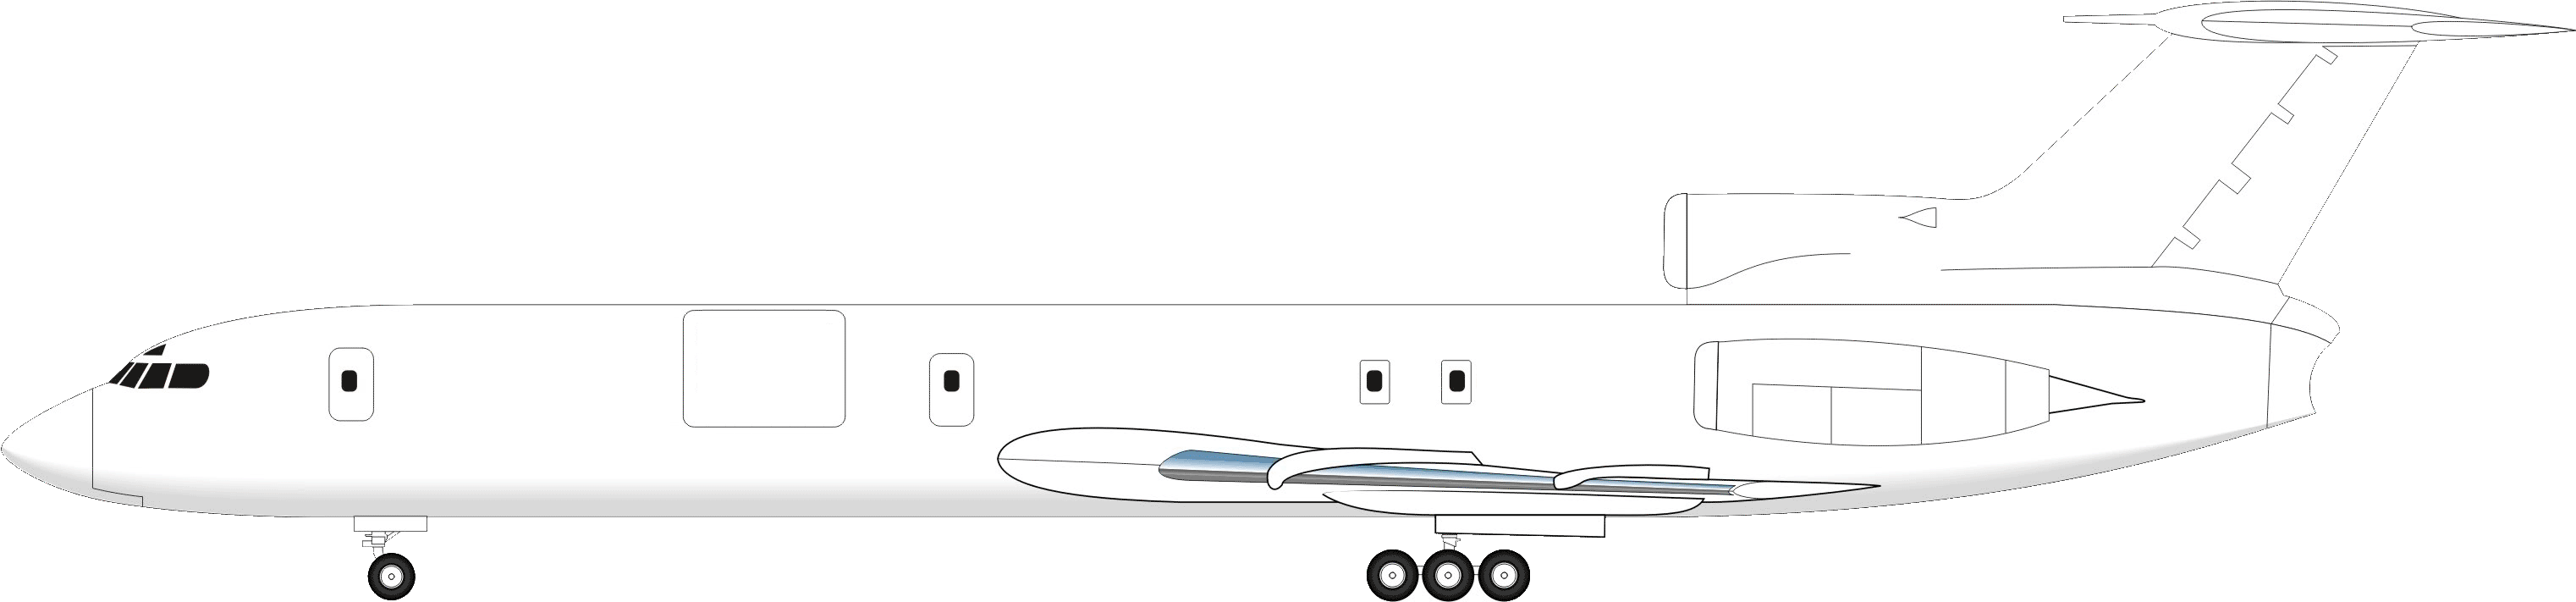 TU-154S